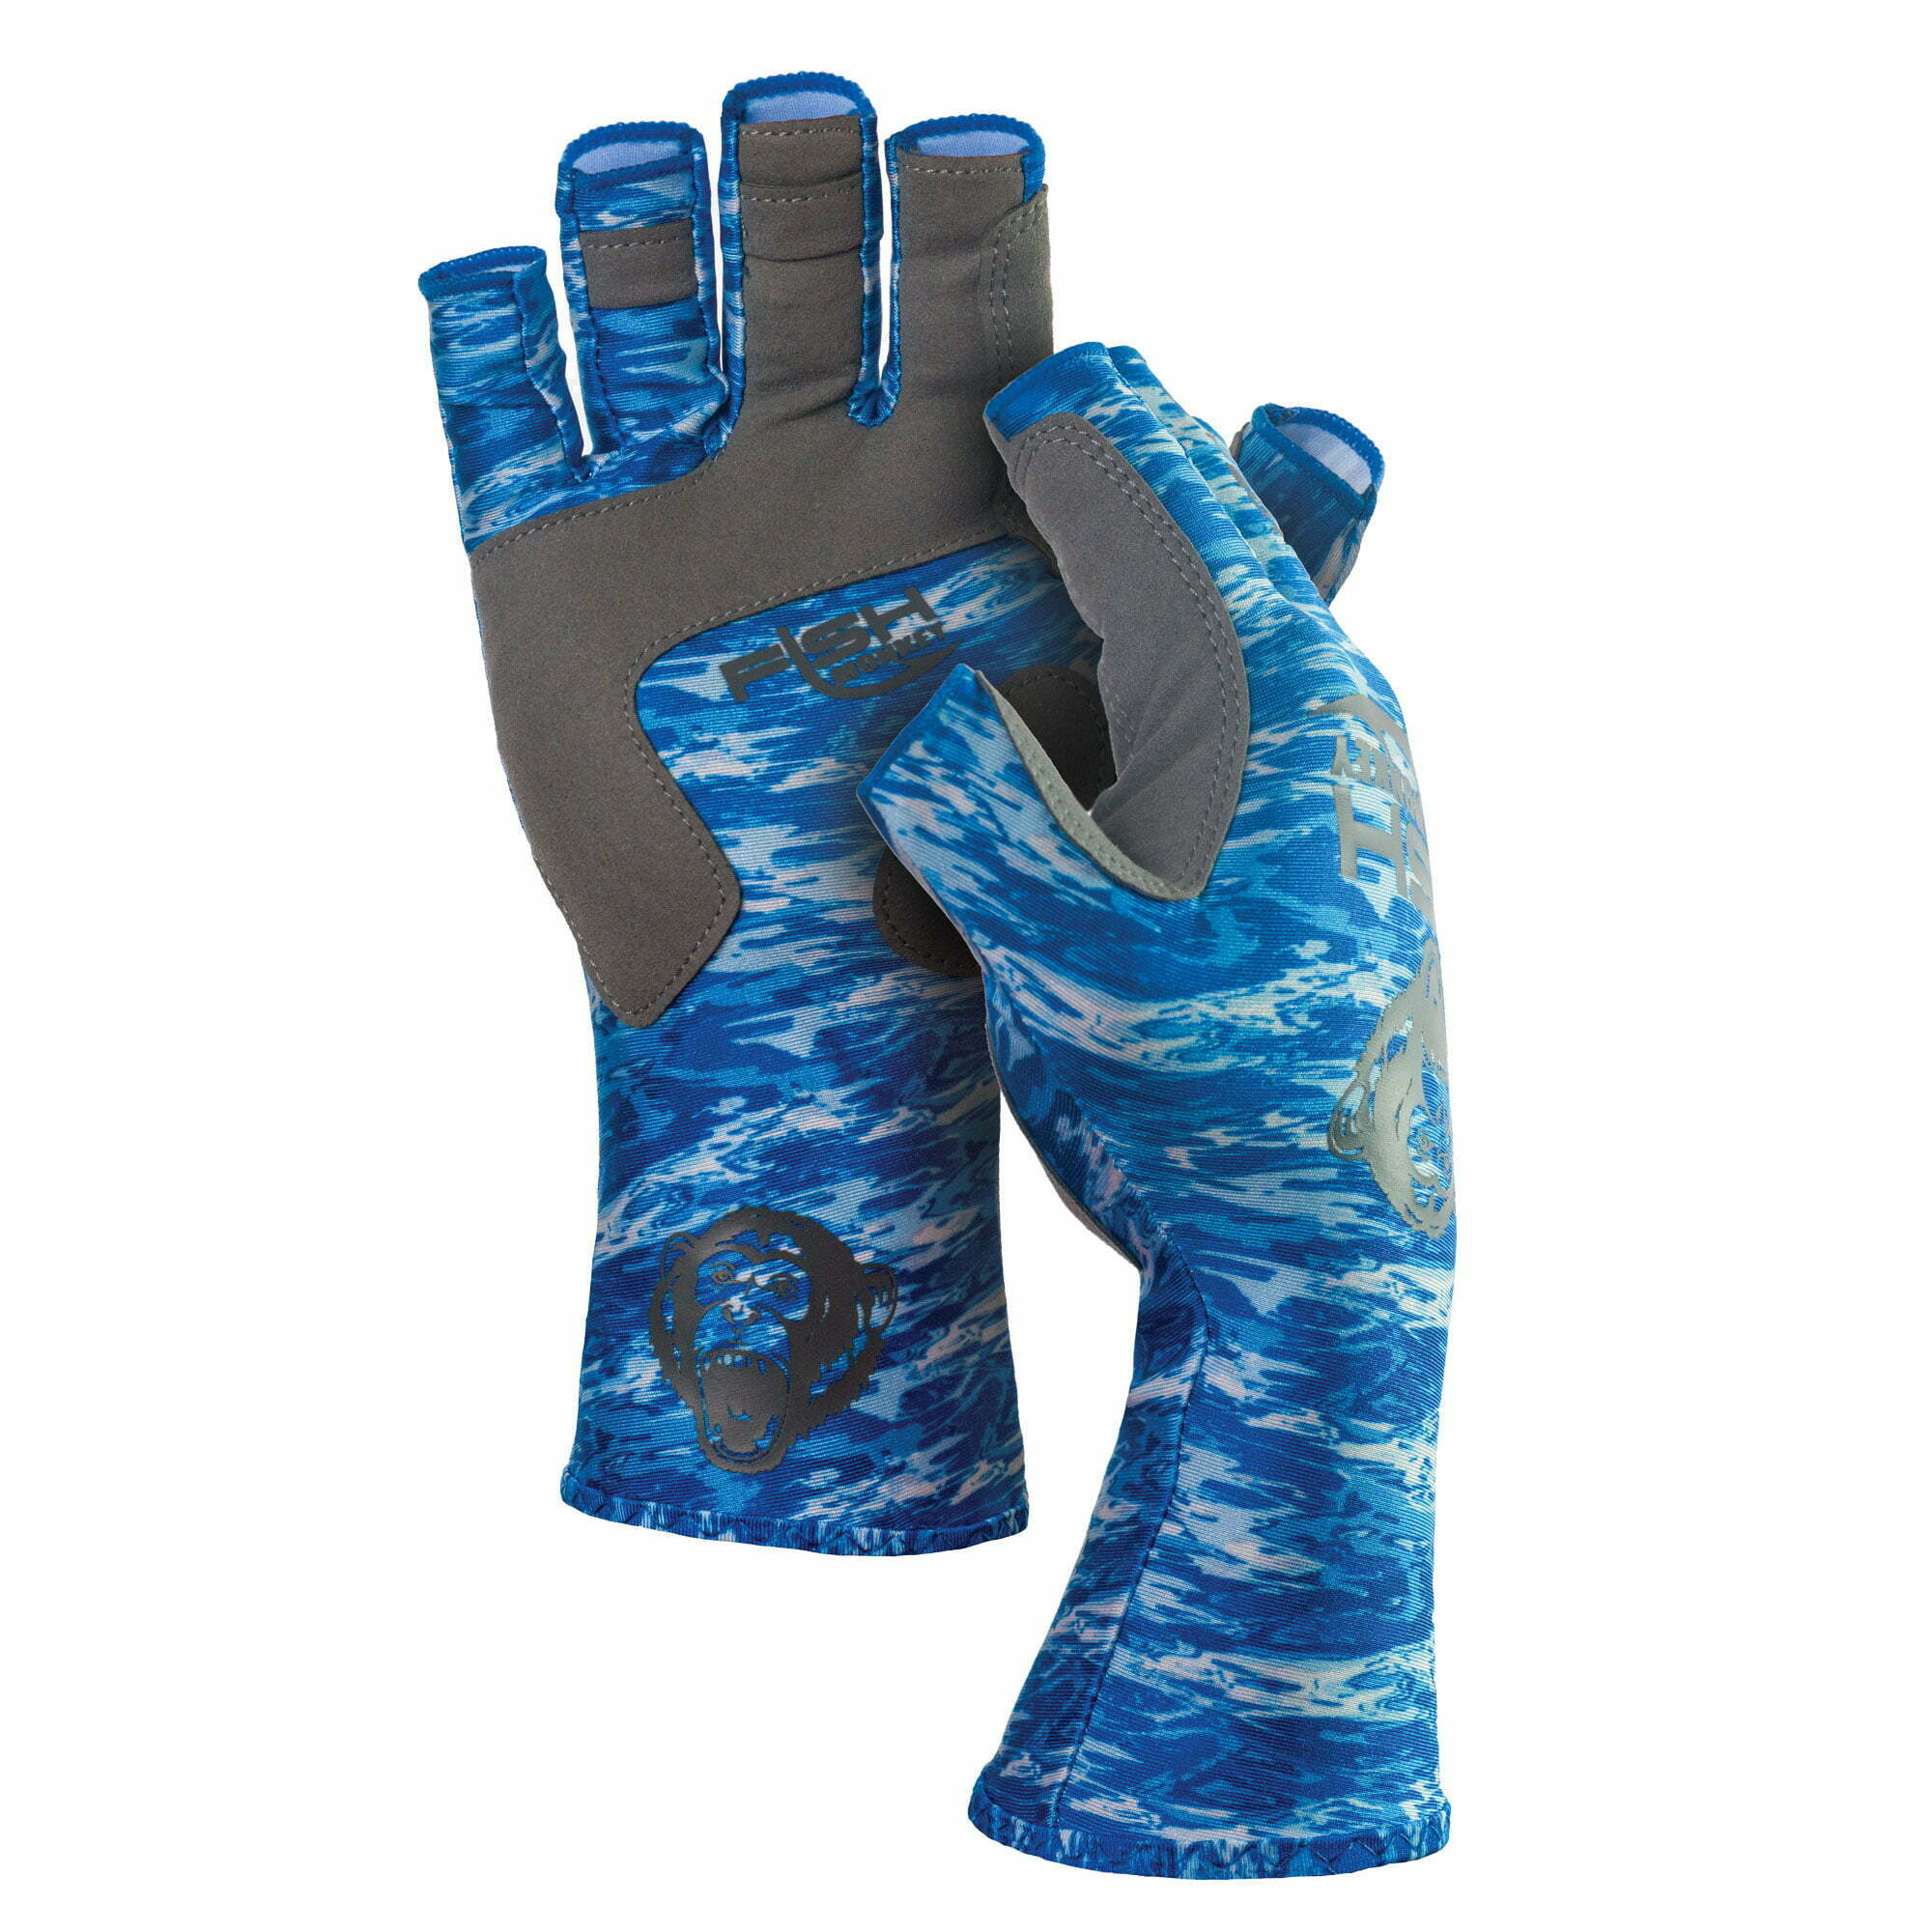 Fishing Gloves,Breathable Non-Slip Half-Finger/2 Finger Cut Sun